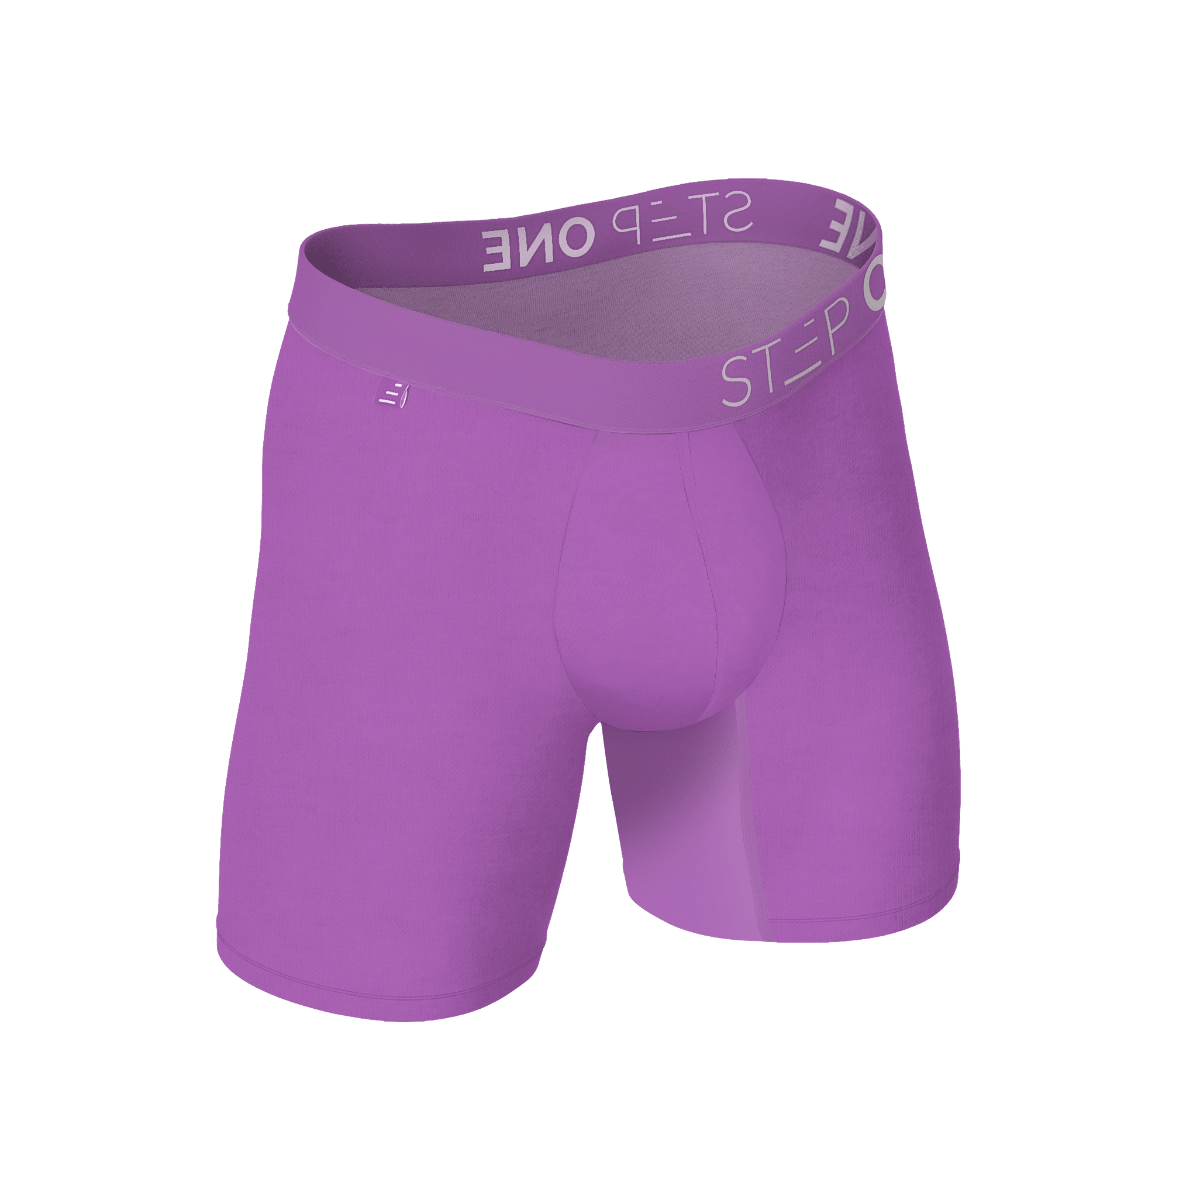 Buy Men's Underwear Online at Step One